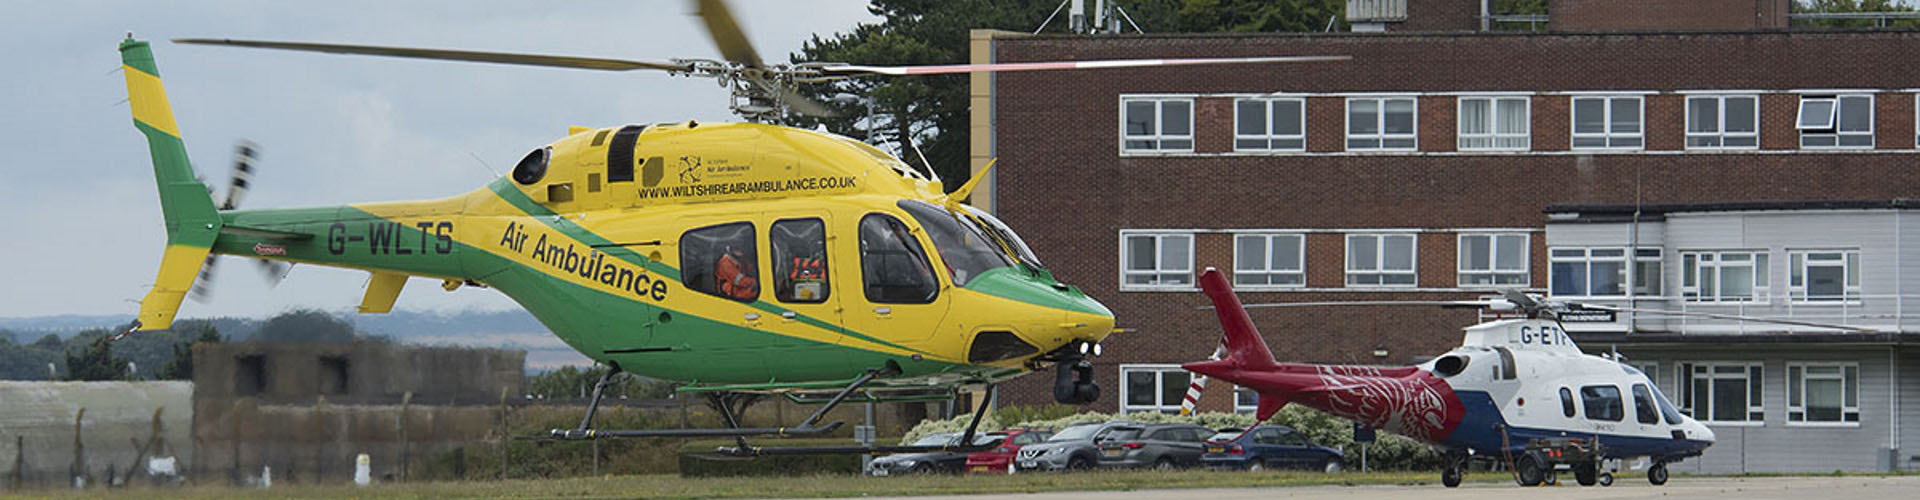 Air Ambulance landing at Boscombe Down